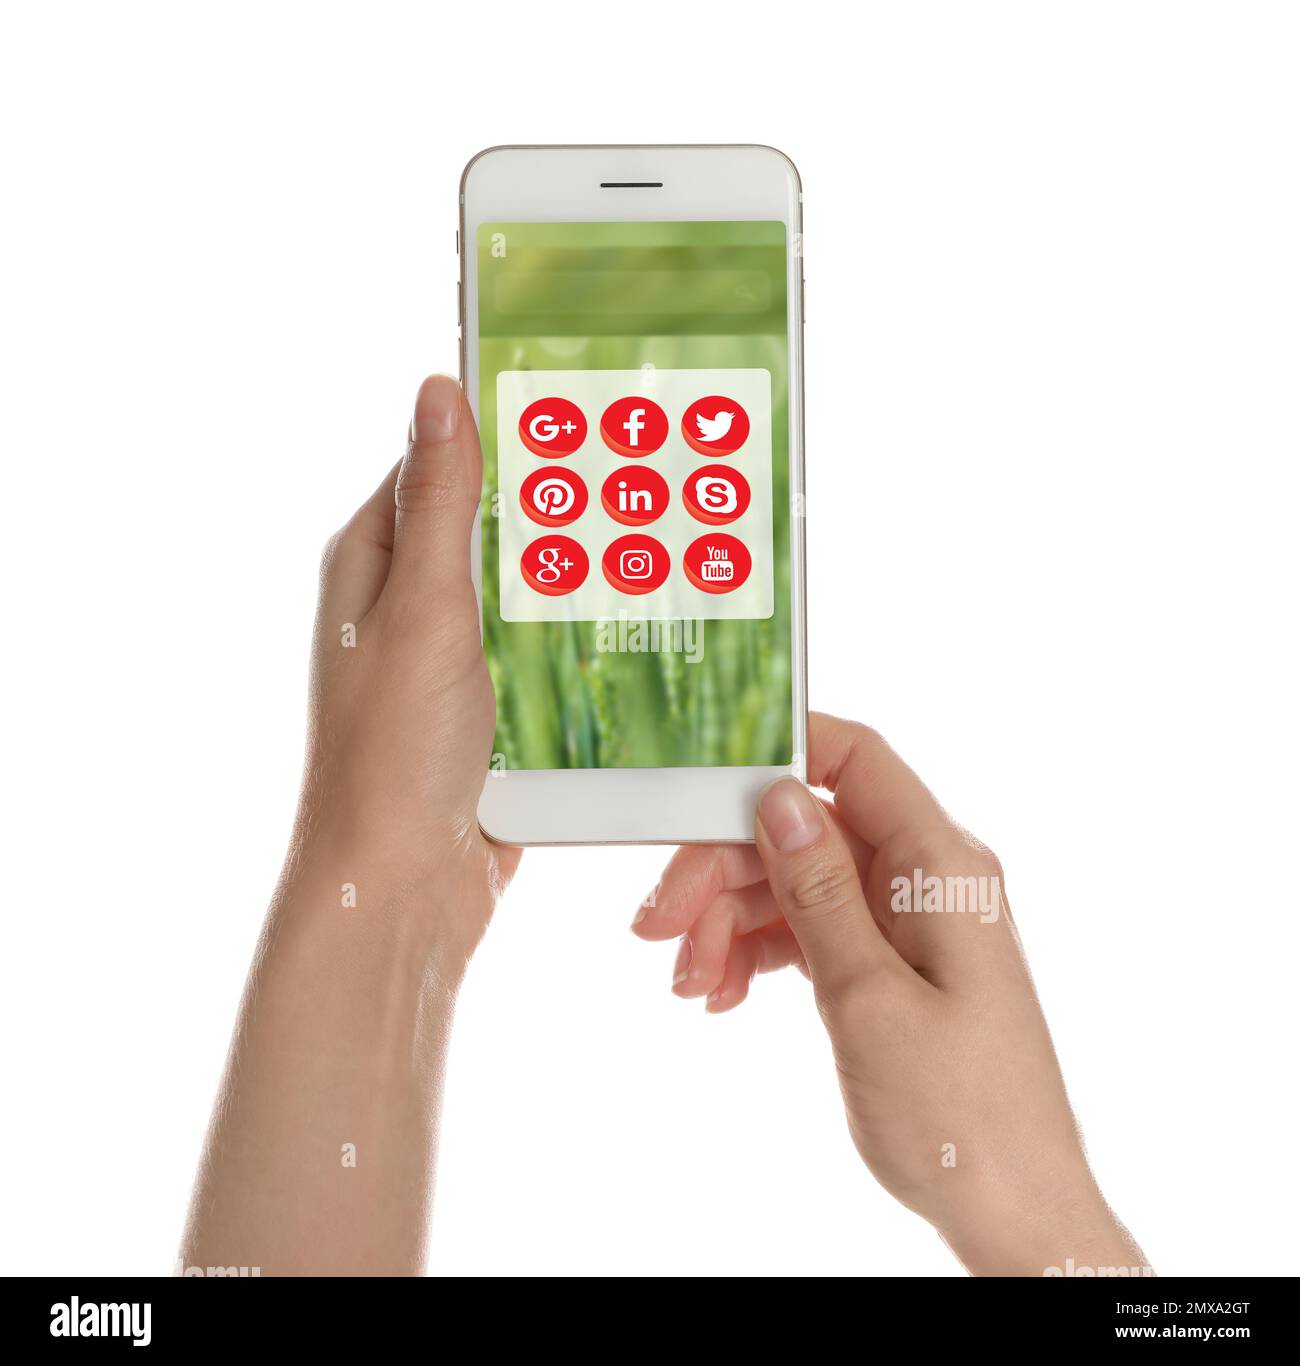 MYKOLAIV, UCRAINA - 30 APRILE 2020: Donna che tiene il telefono con le icone delle app dei social media su sfondo bianco, primo piano Foto Stock